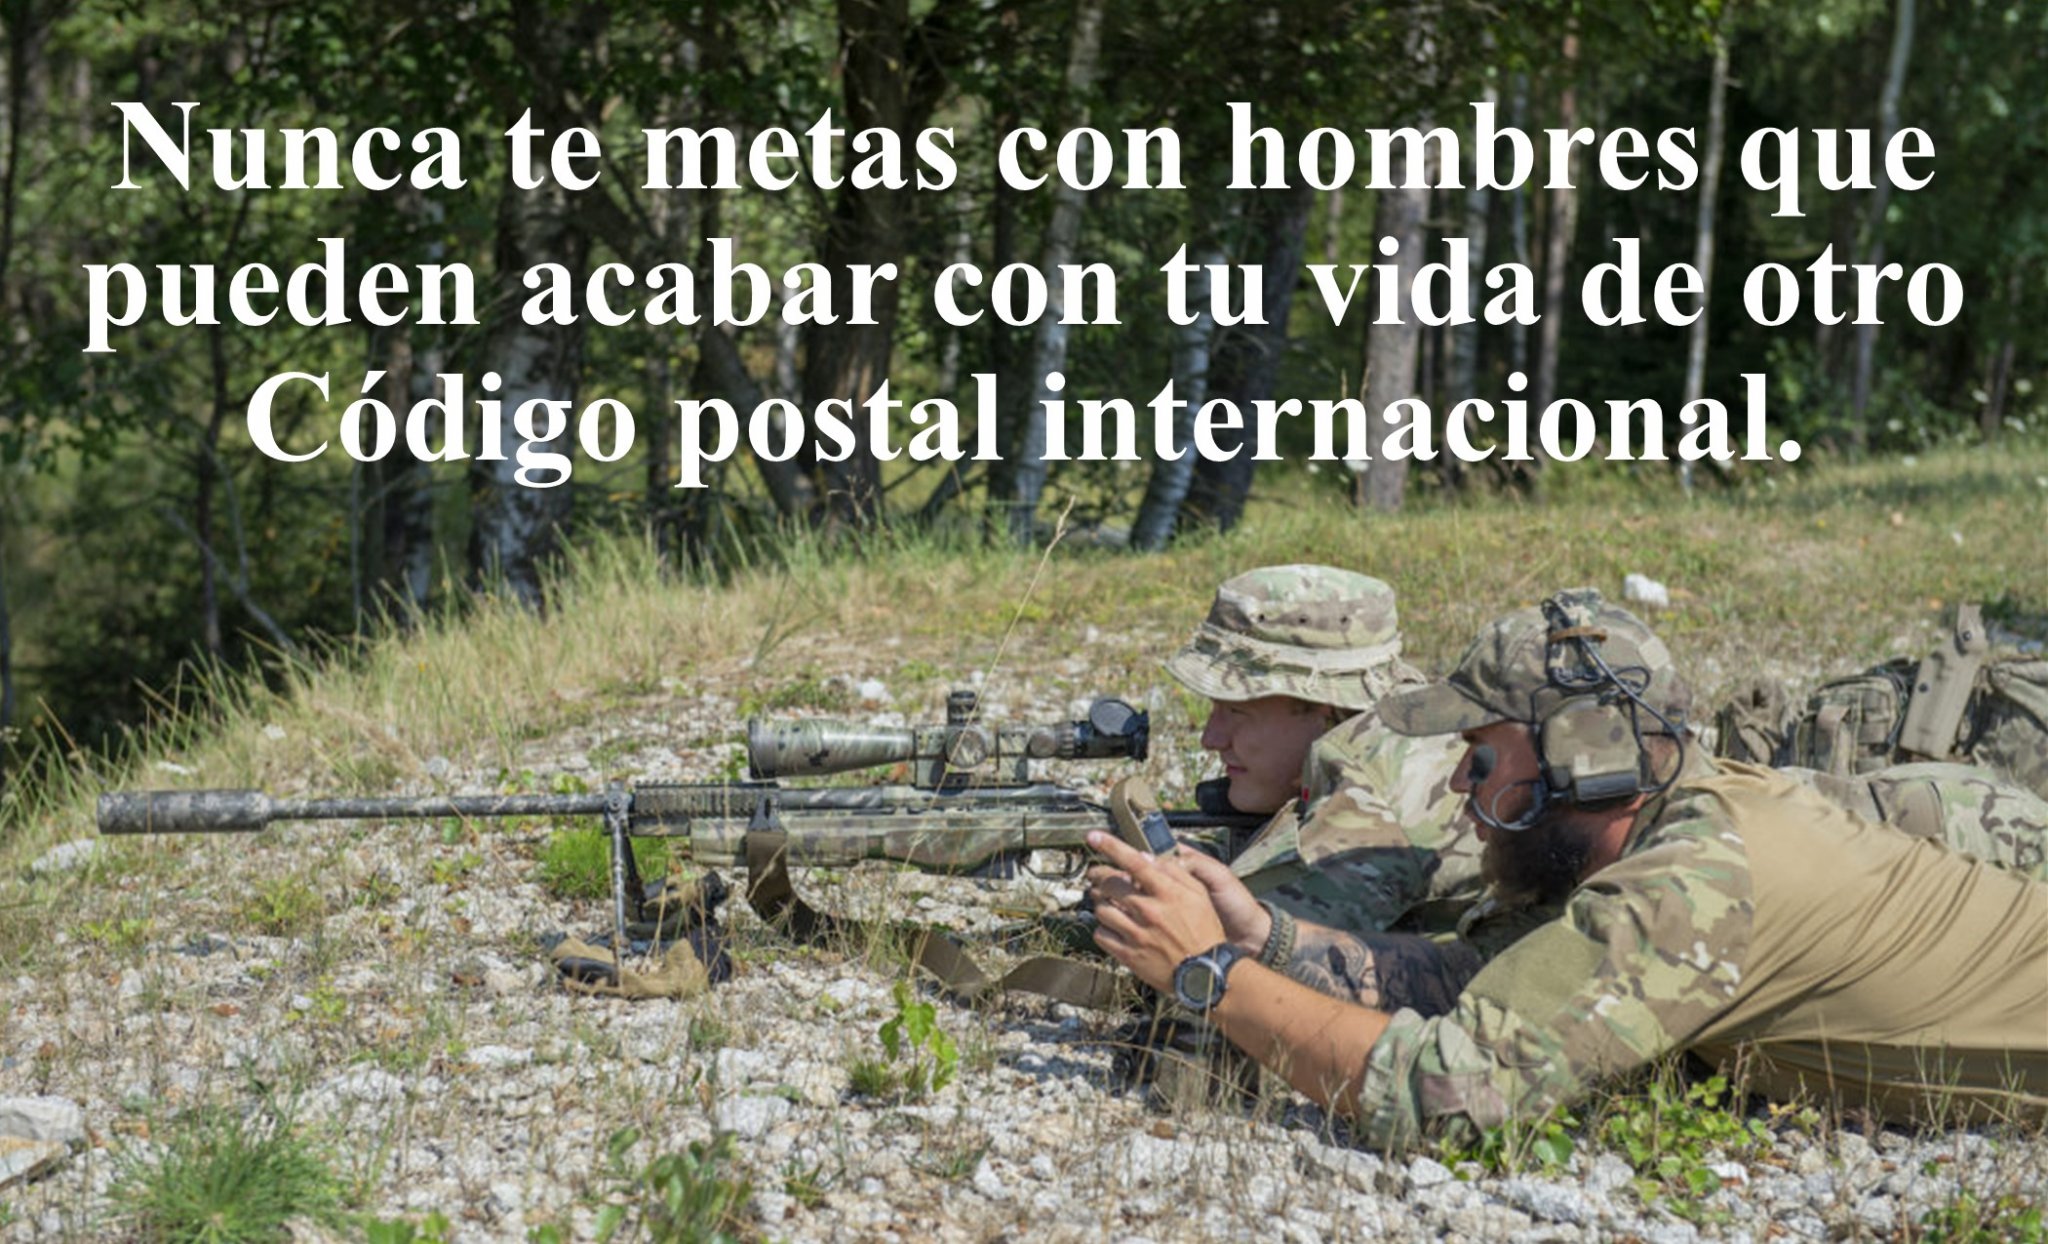 International Sniper Spanish Version.jpg